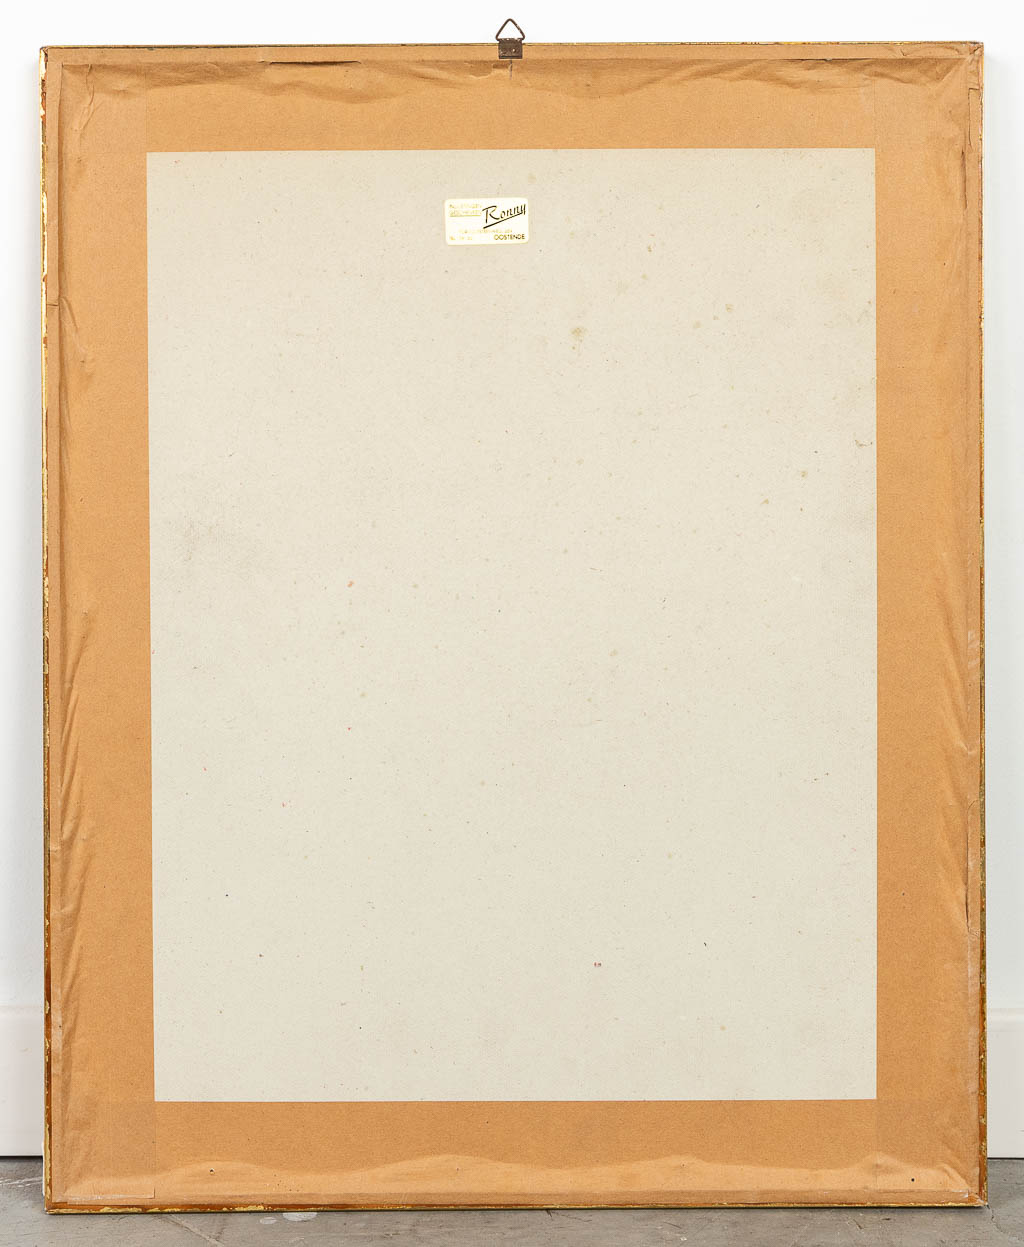 Floris JESPERS (1889-1965) 'Gezeten figuur' gouache op papier. 1943. 